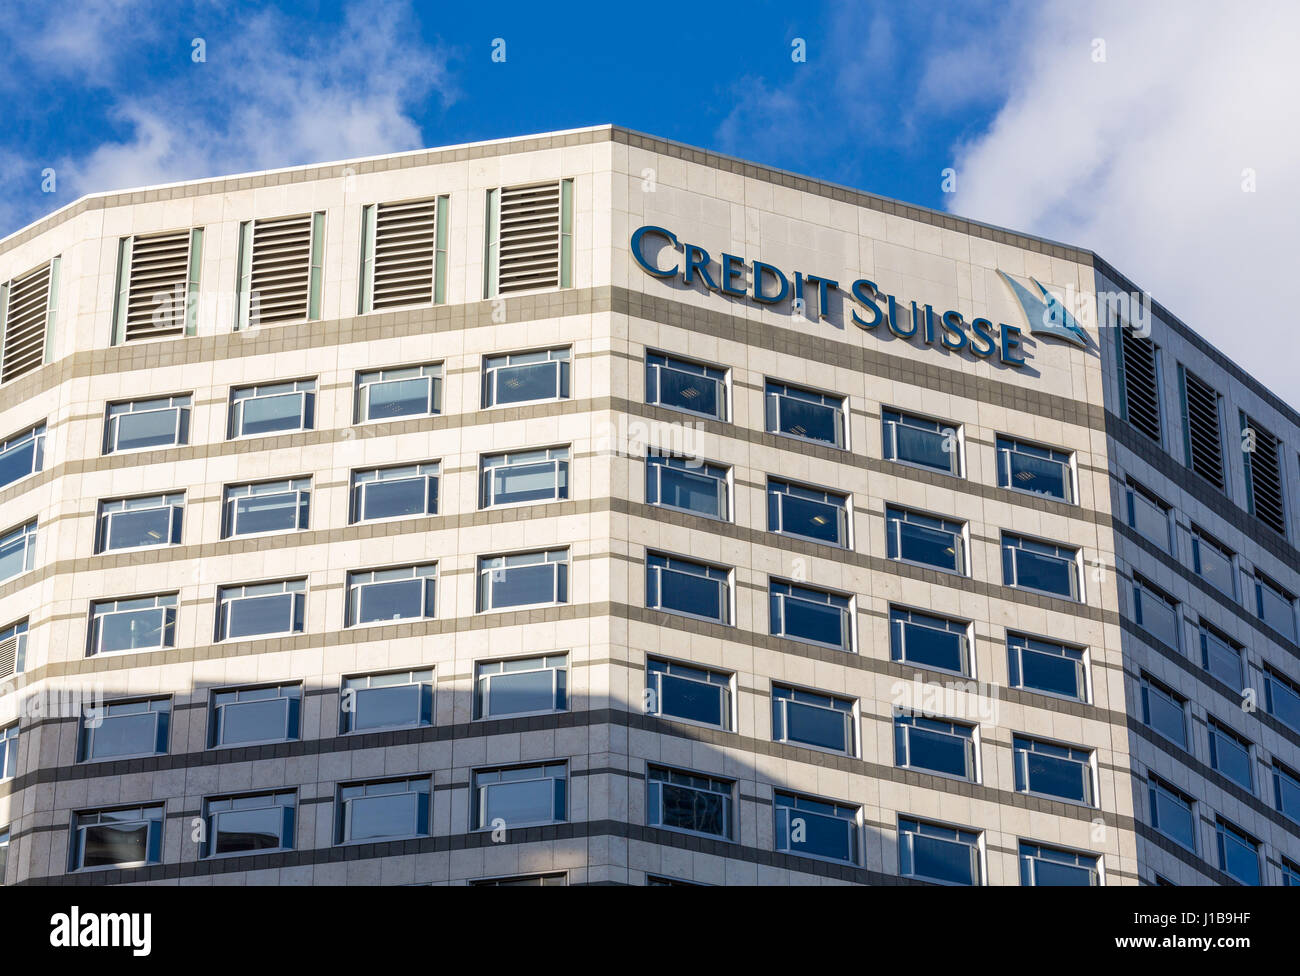 Le logo de la banque Crédit Suisse sur le côté de leur immeuble de bureaux à Canary Wharf, les Docklands, Londres, Angleterre Banque D'Images